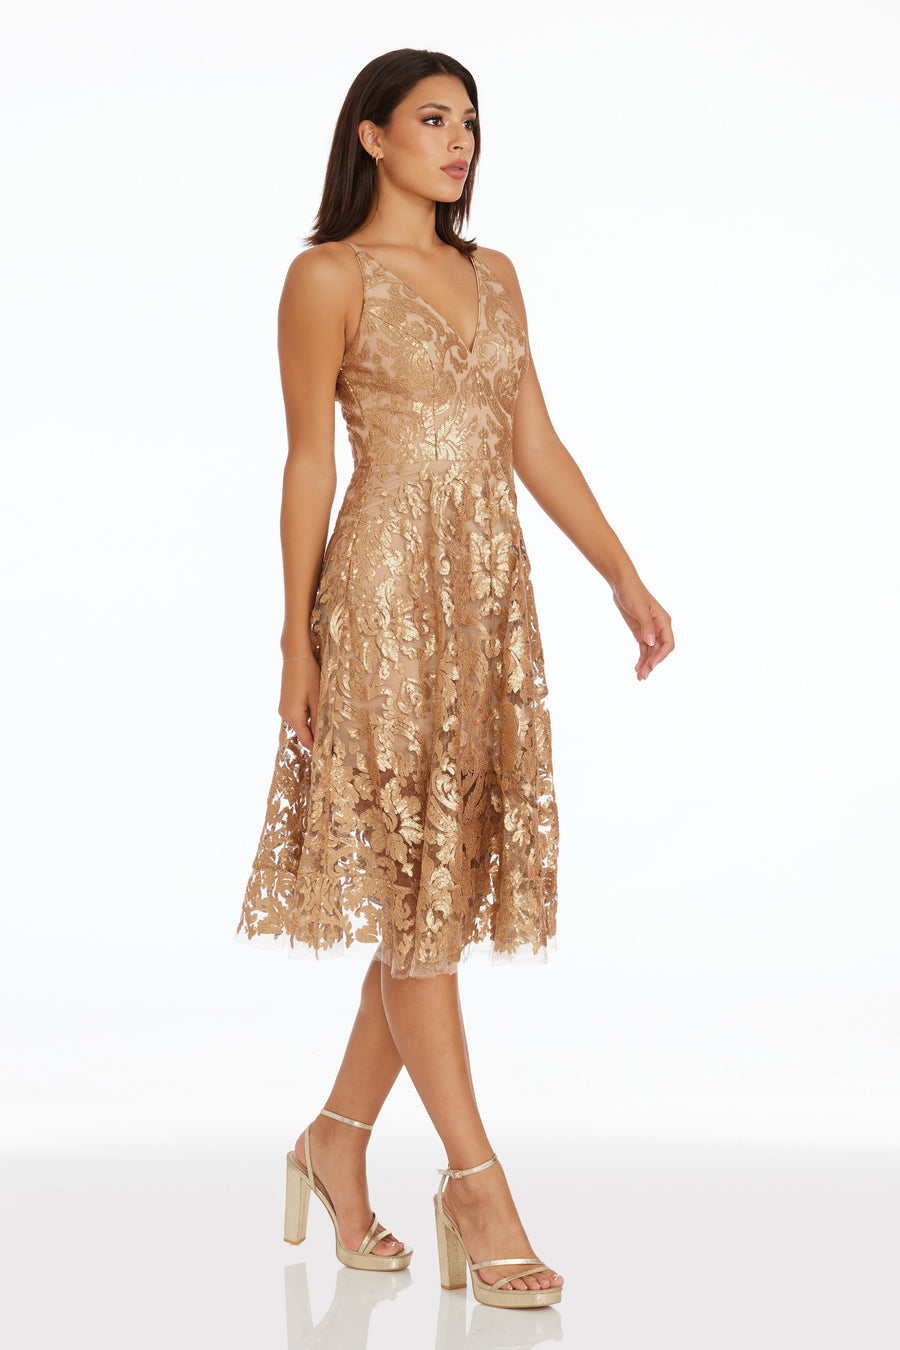 Blair Dress / Gold Nude